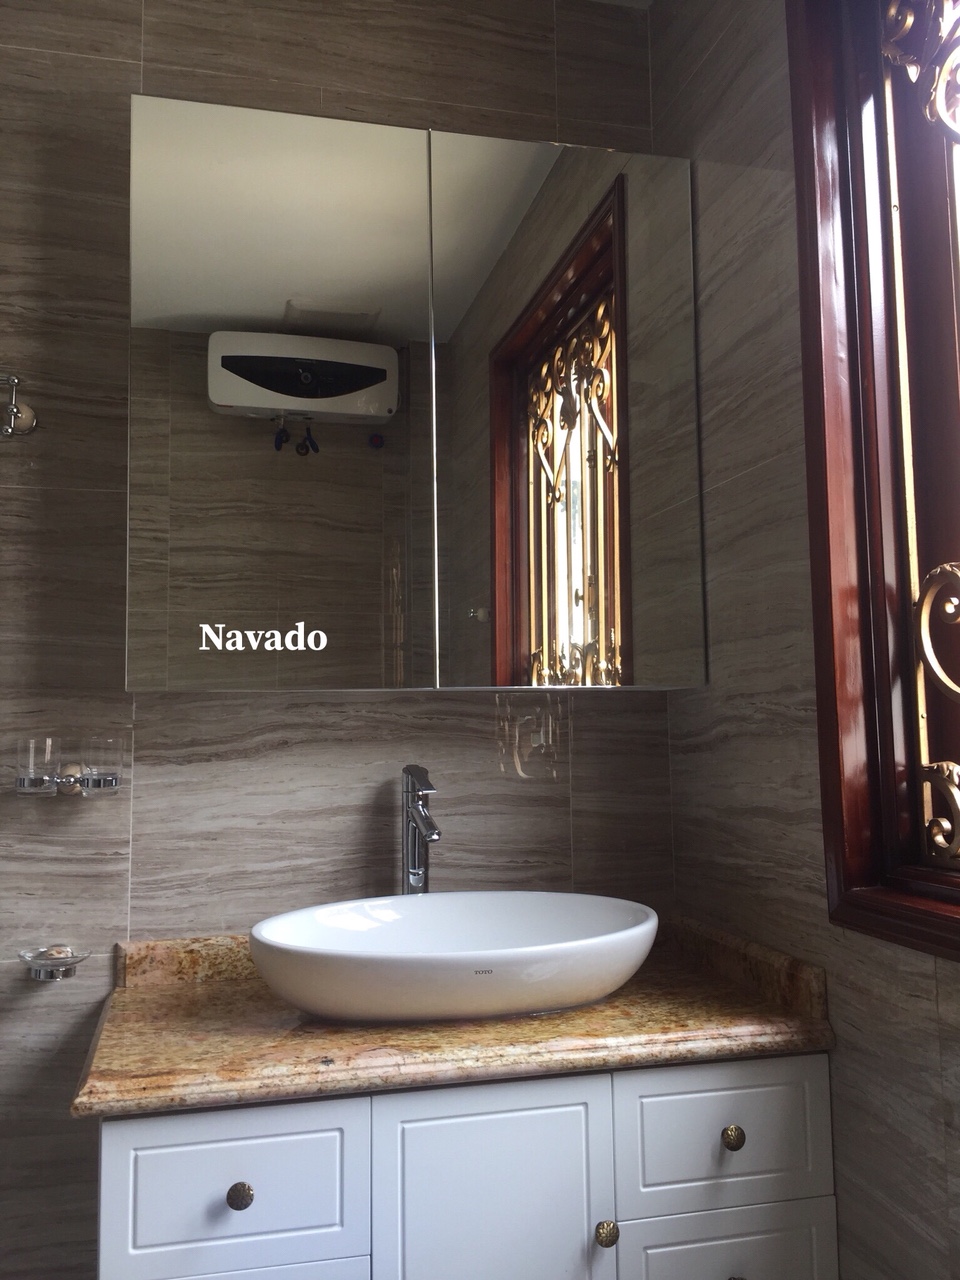 Tủ gương phòng tắm Navado là một sự lựa chọn tuyệt vời cho những ai yêu thích sự bền vững và sang trọng. Với thiết kế đẹp mắt và chất liệu chắc chắn, tủ gương Navado sẽ giúp nâng cao giá trị phòng tắm của bạn. Với nhiều tùy chọn lưu trữ thông minh, đây là giải pháp tốt nhất để tổ chức các vật dụng cá nhân của bạn một cách hiệu quả.